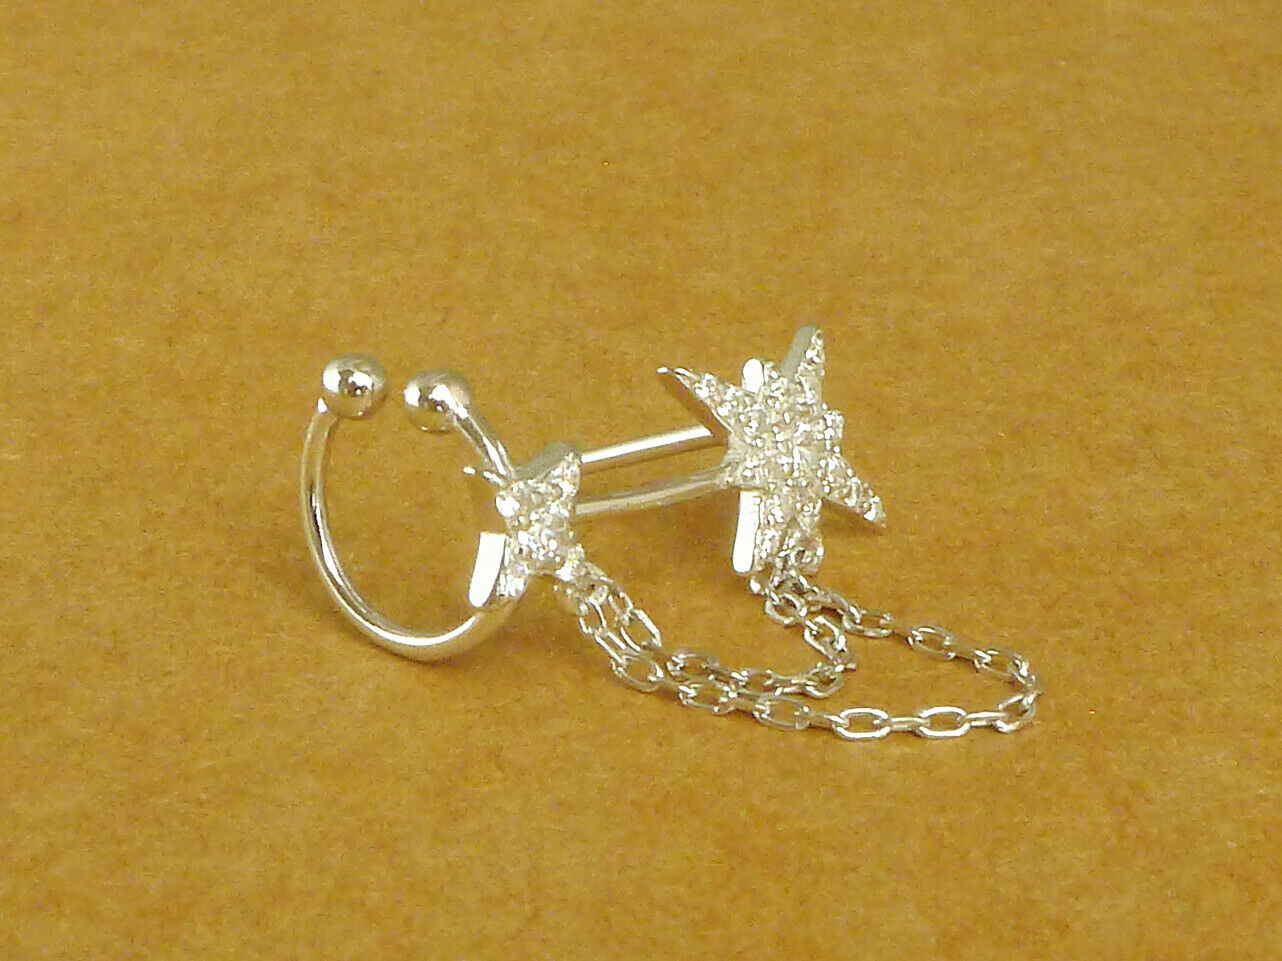 Asymmetrical Sterling Silver Paved CZ Pole Star Chain Cuff Earrings - sugarkittenlondon